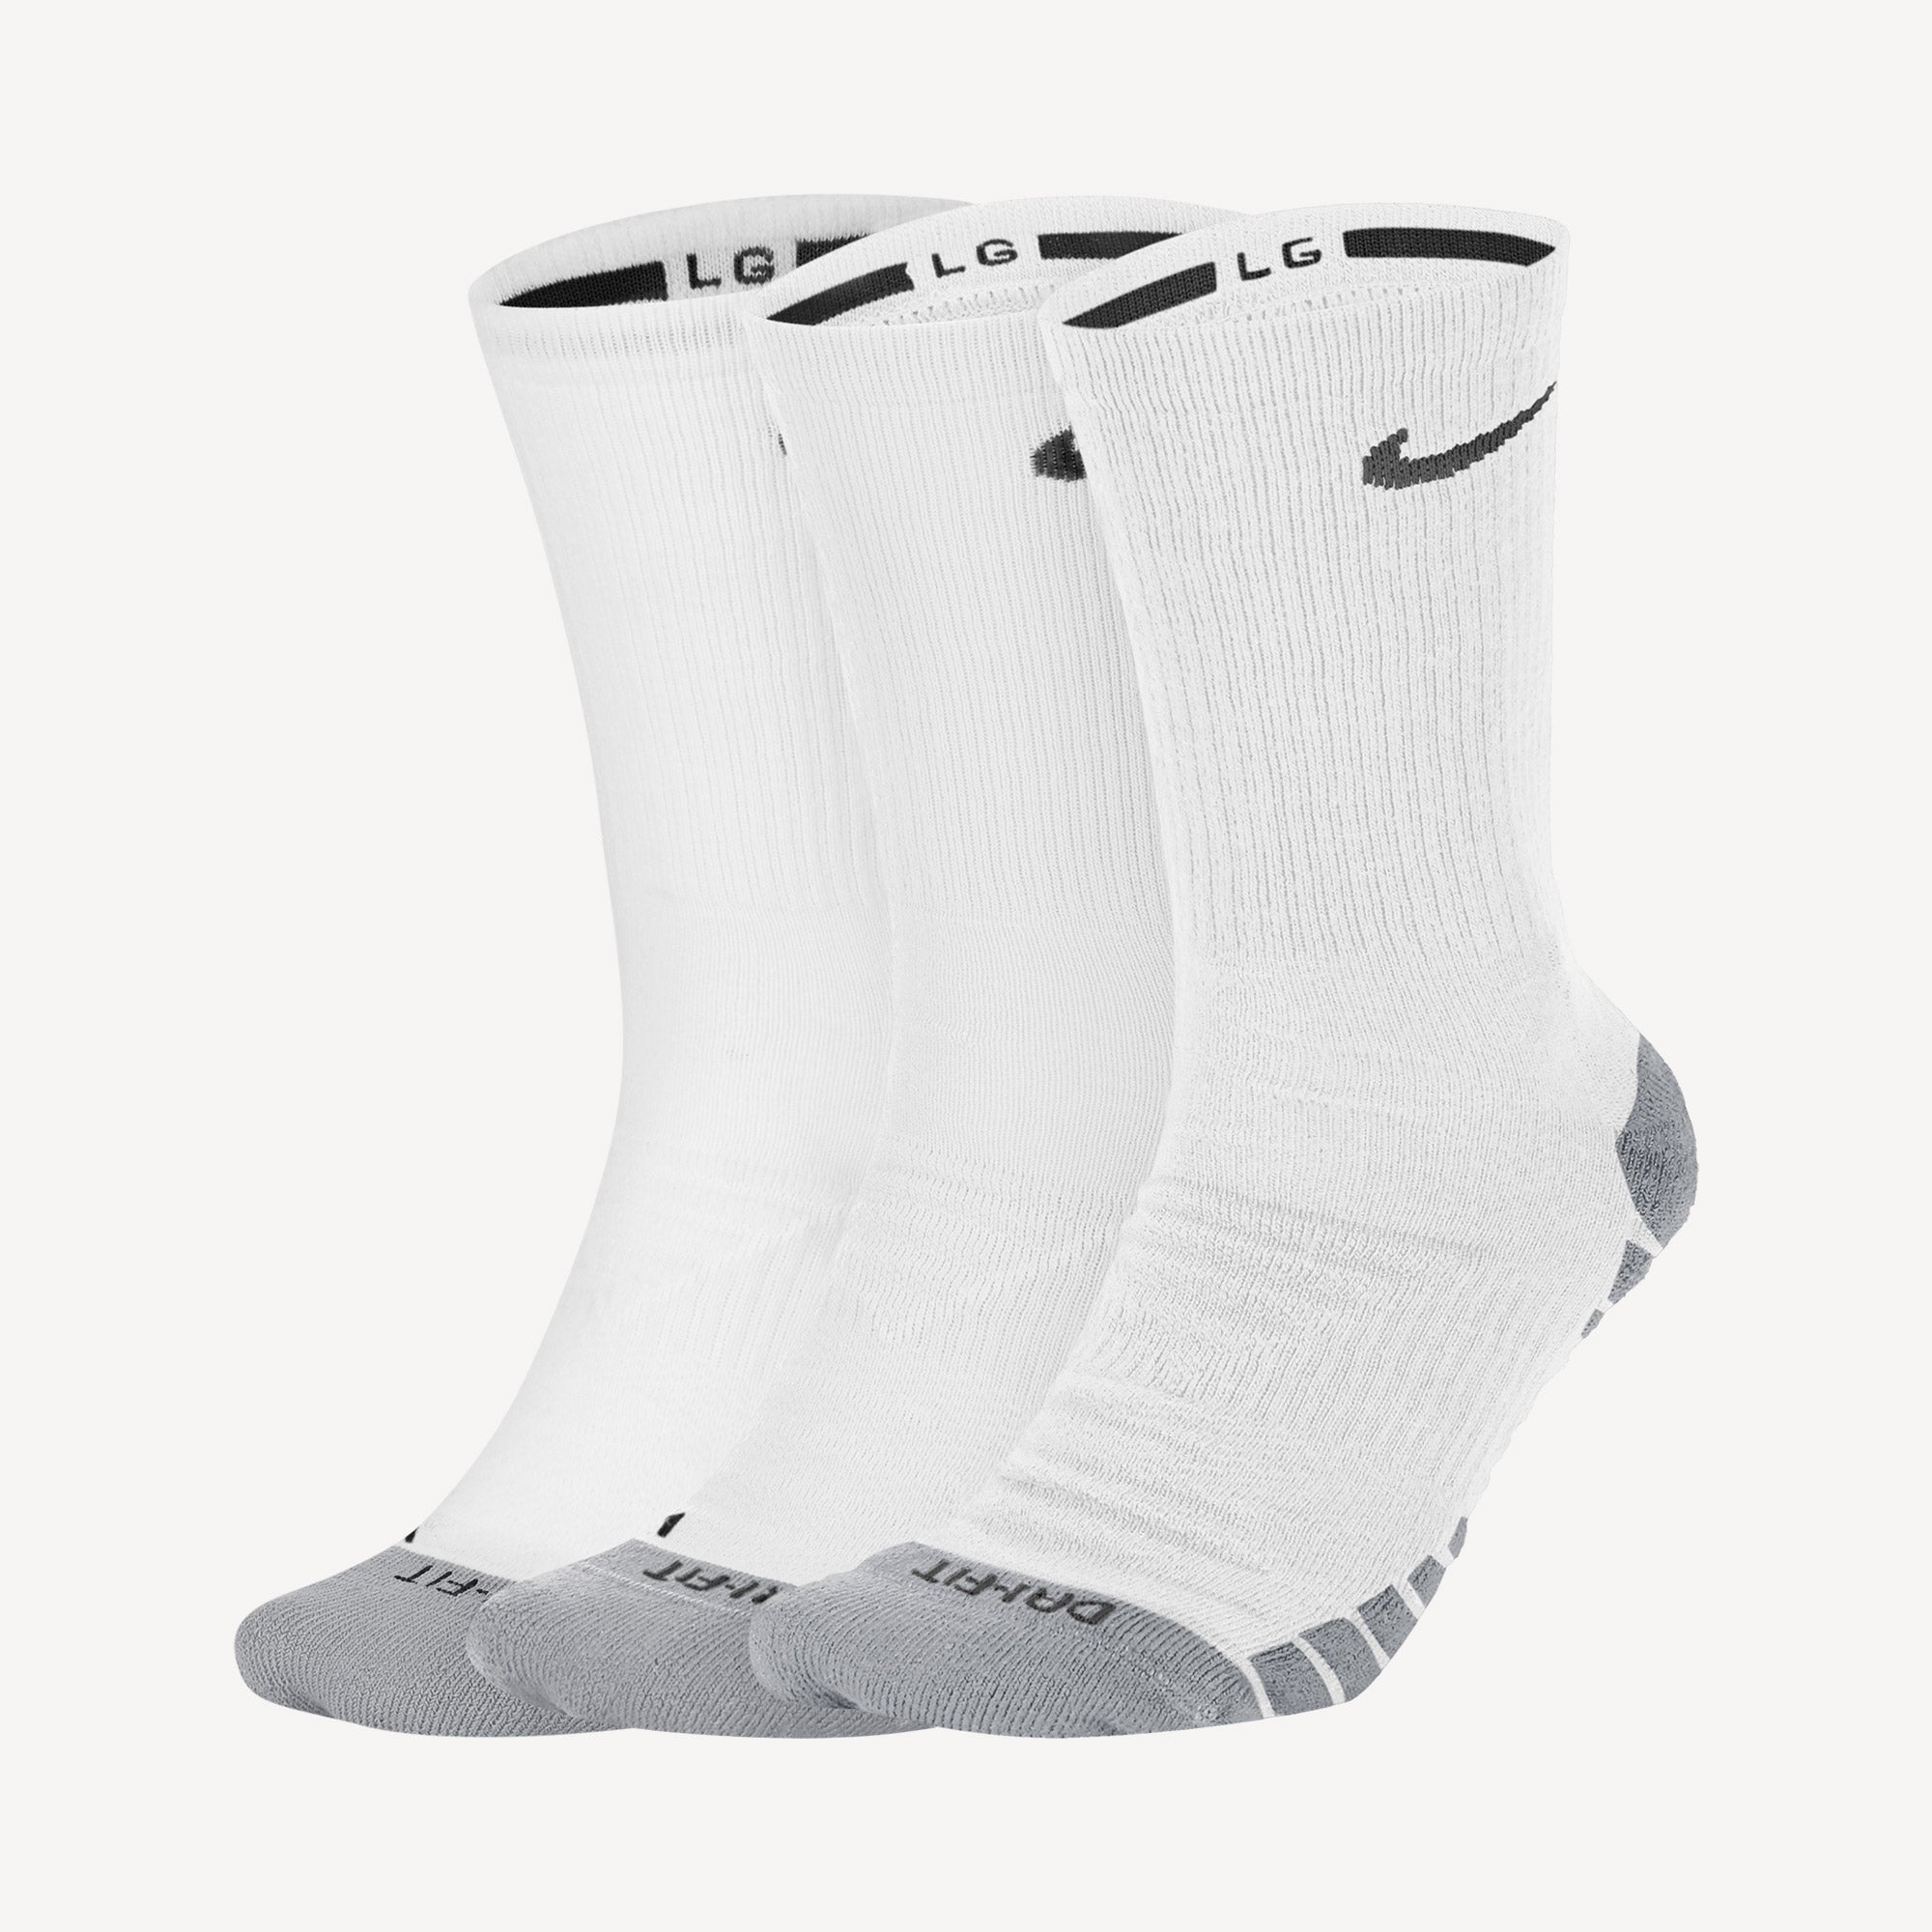 Nike Max Cushioned Training Crew Socks (3 Pairs) - White